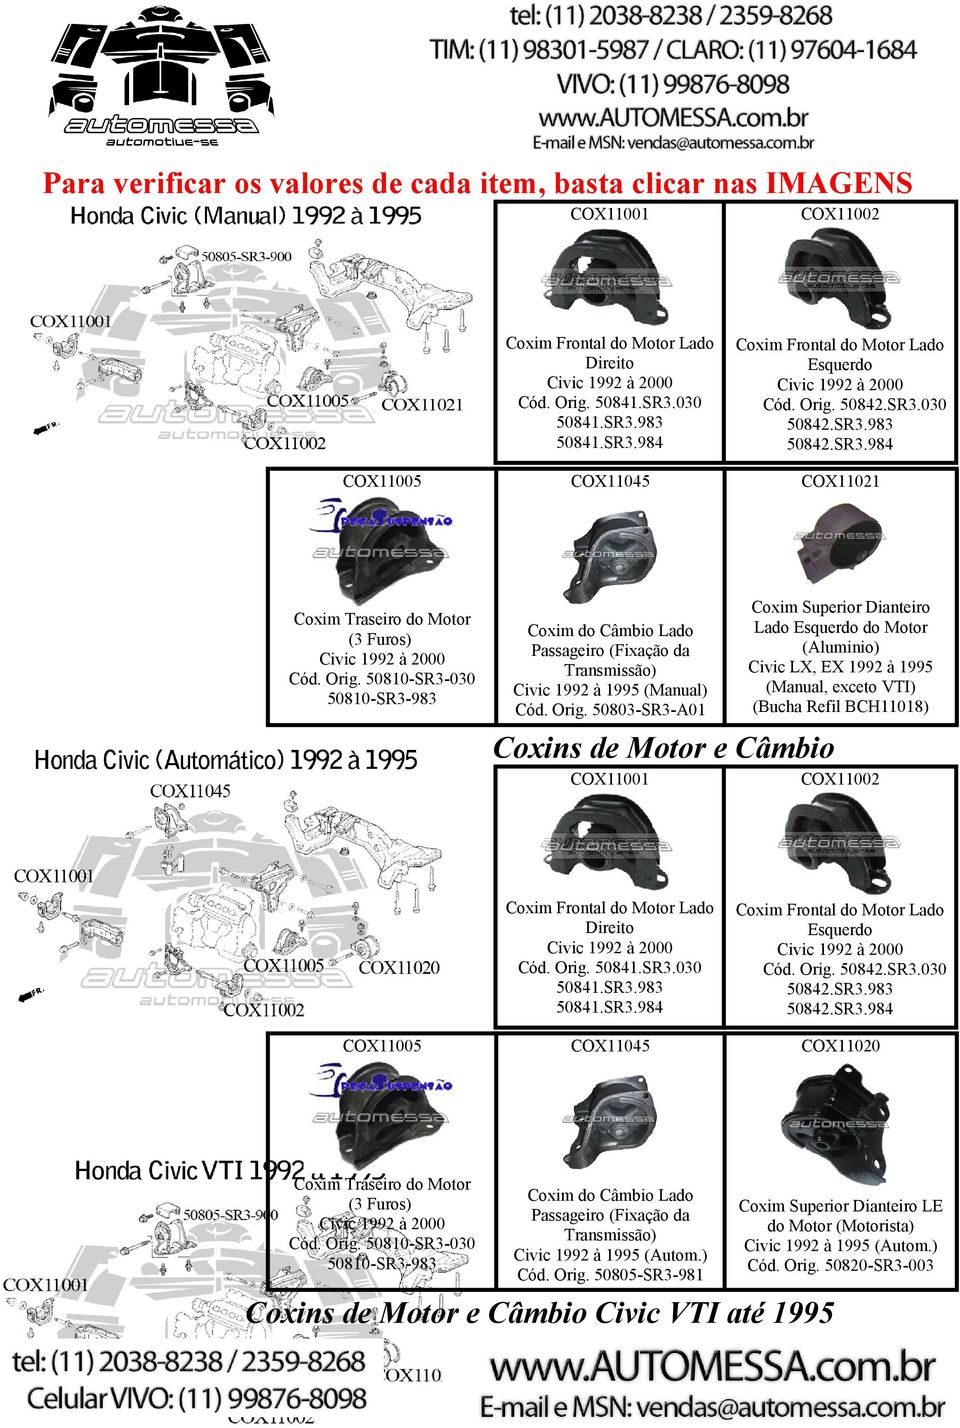 50803-SR3-A01 Coxim Superior Dianteiro Lado Esquerdo do Motor (Aluminio) Civic LX, EX 1992 à 1995 (Manual, exceto VTI) (Bucha Refil BCH11018) Coxins de Motor e Câmbio SR3.983 50842.SR3.984 COX11045 COX11020 Coxim do Câmbio Lado Passageiro (Fixação da Transmissão) Civic 1992 à 1995 (Autom.